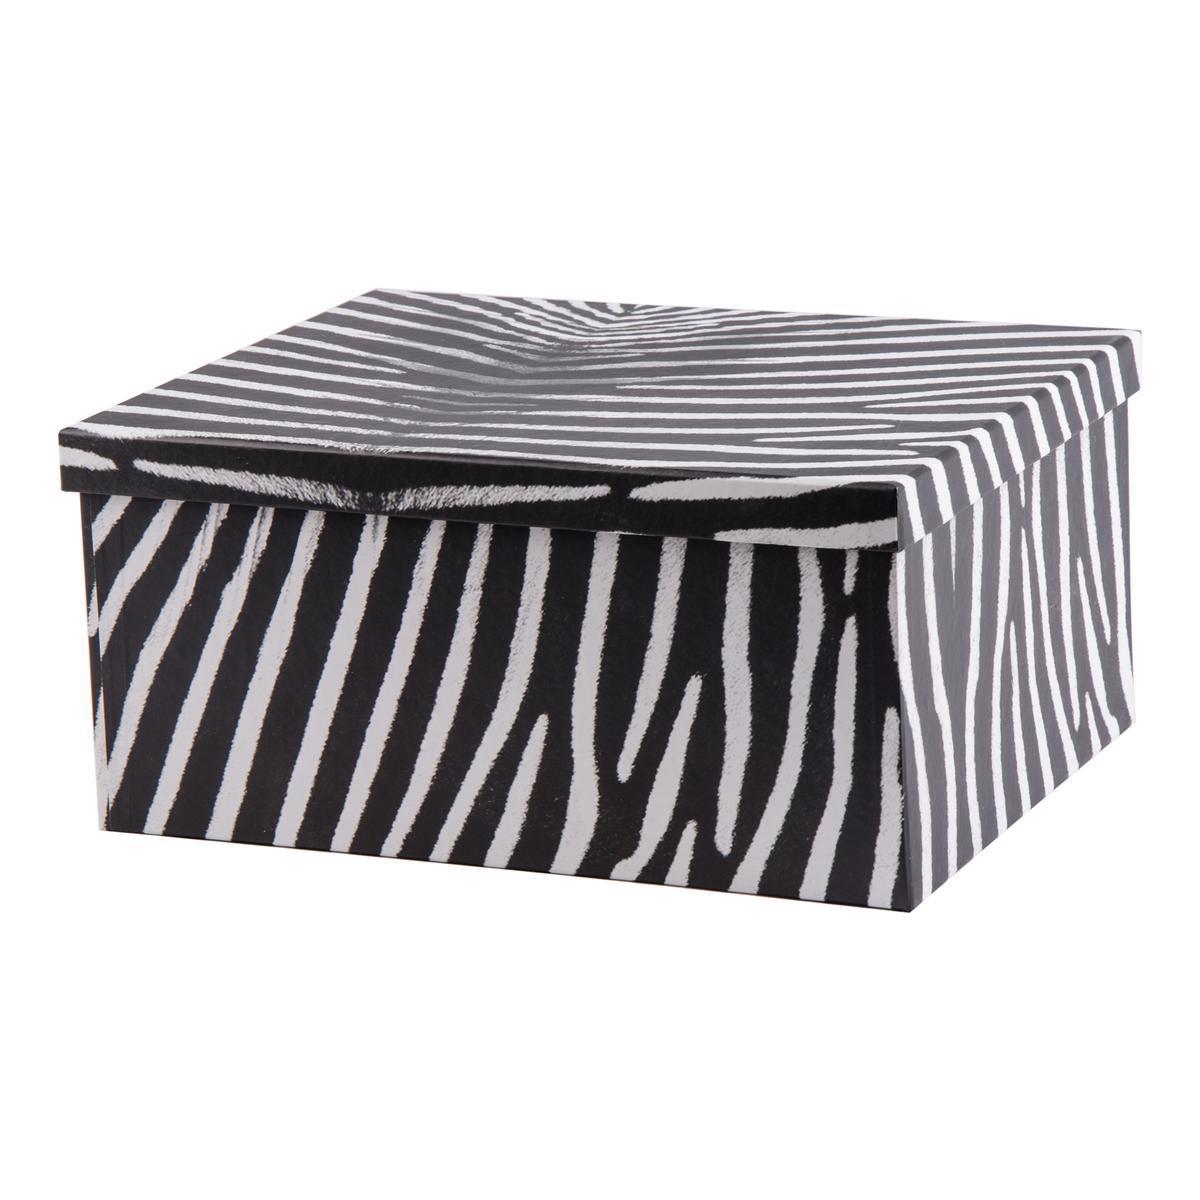 Boite zébré en carton - 36 x 28 x 17 cm - Noir et blanc